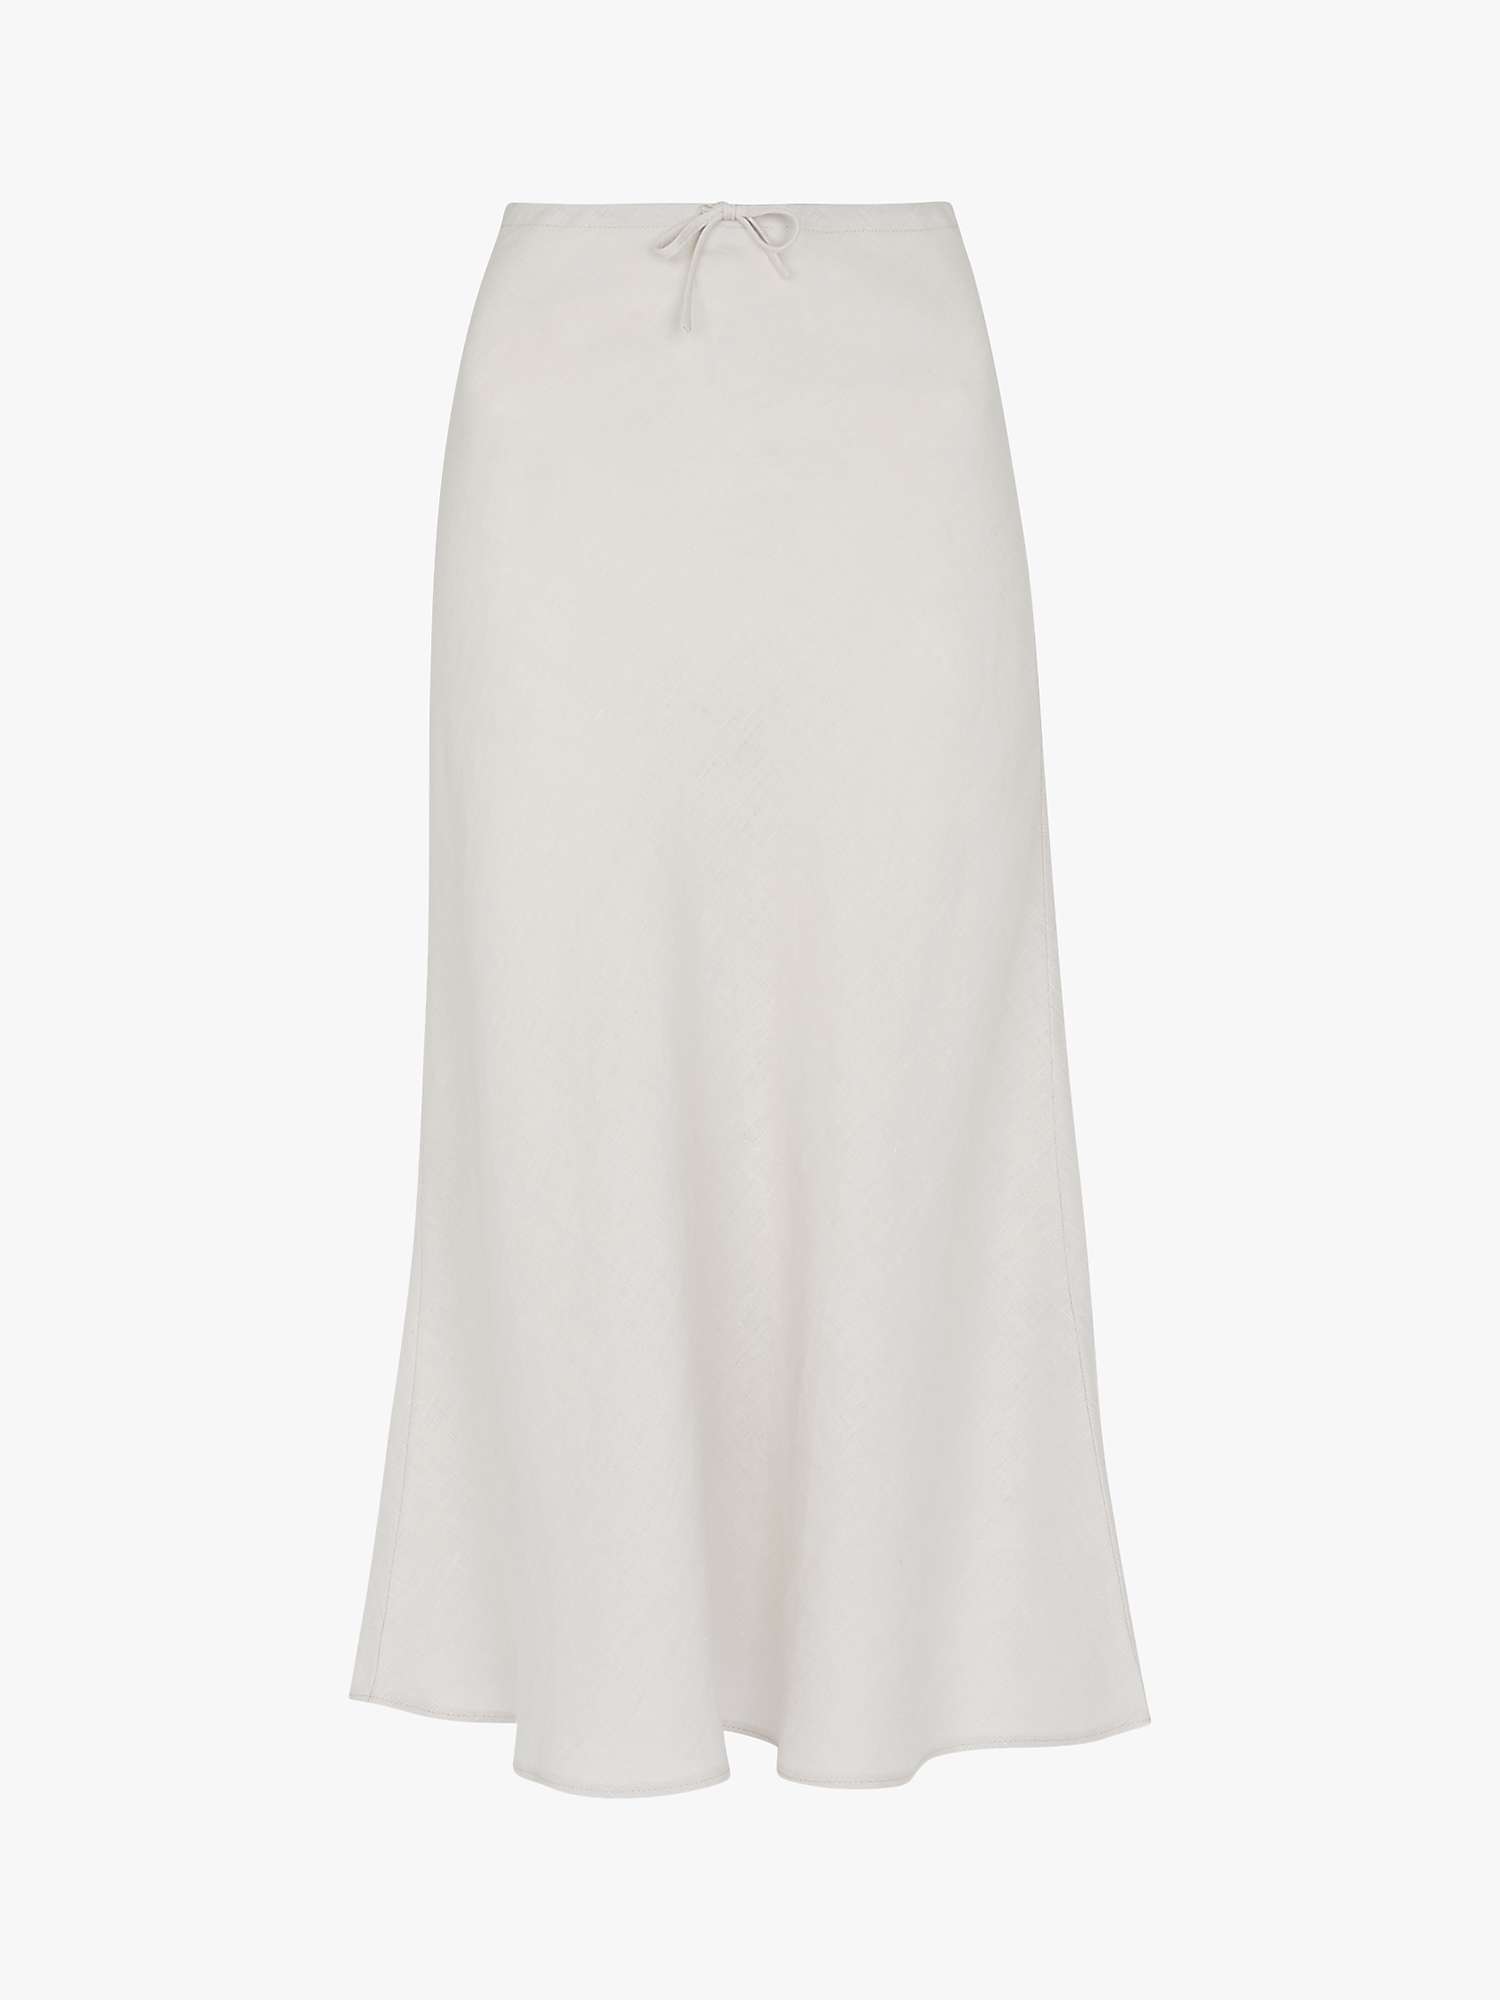 Whistles Linen Bias Cut Skirt, Stone at John Lewis & Partners